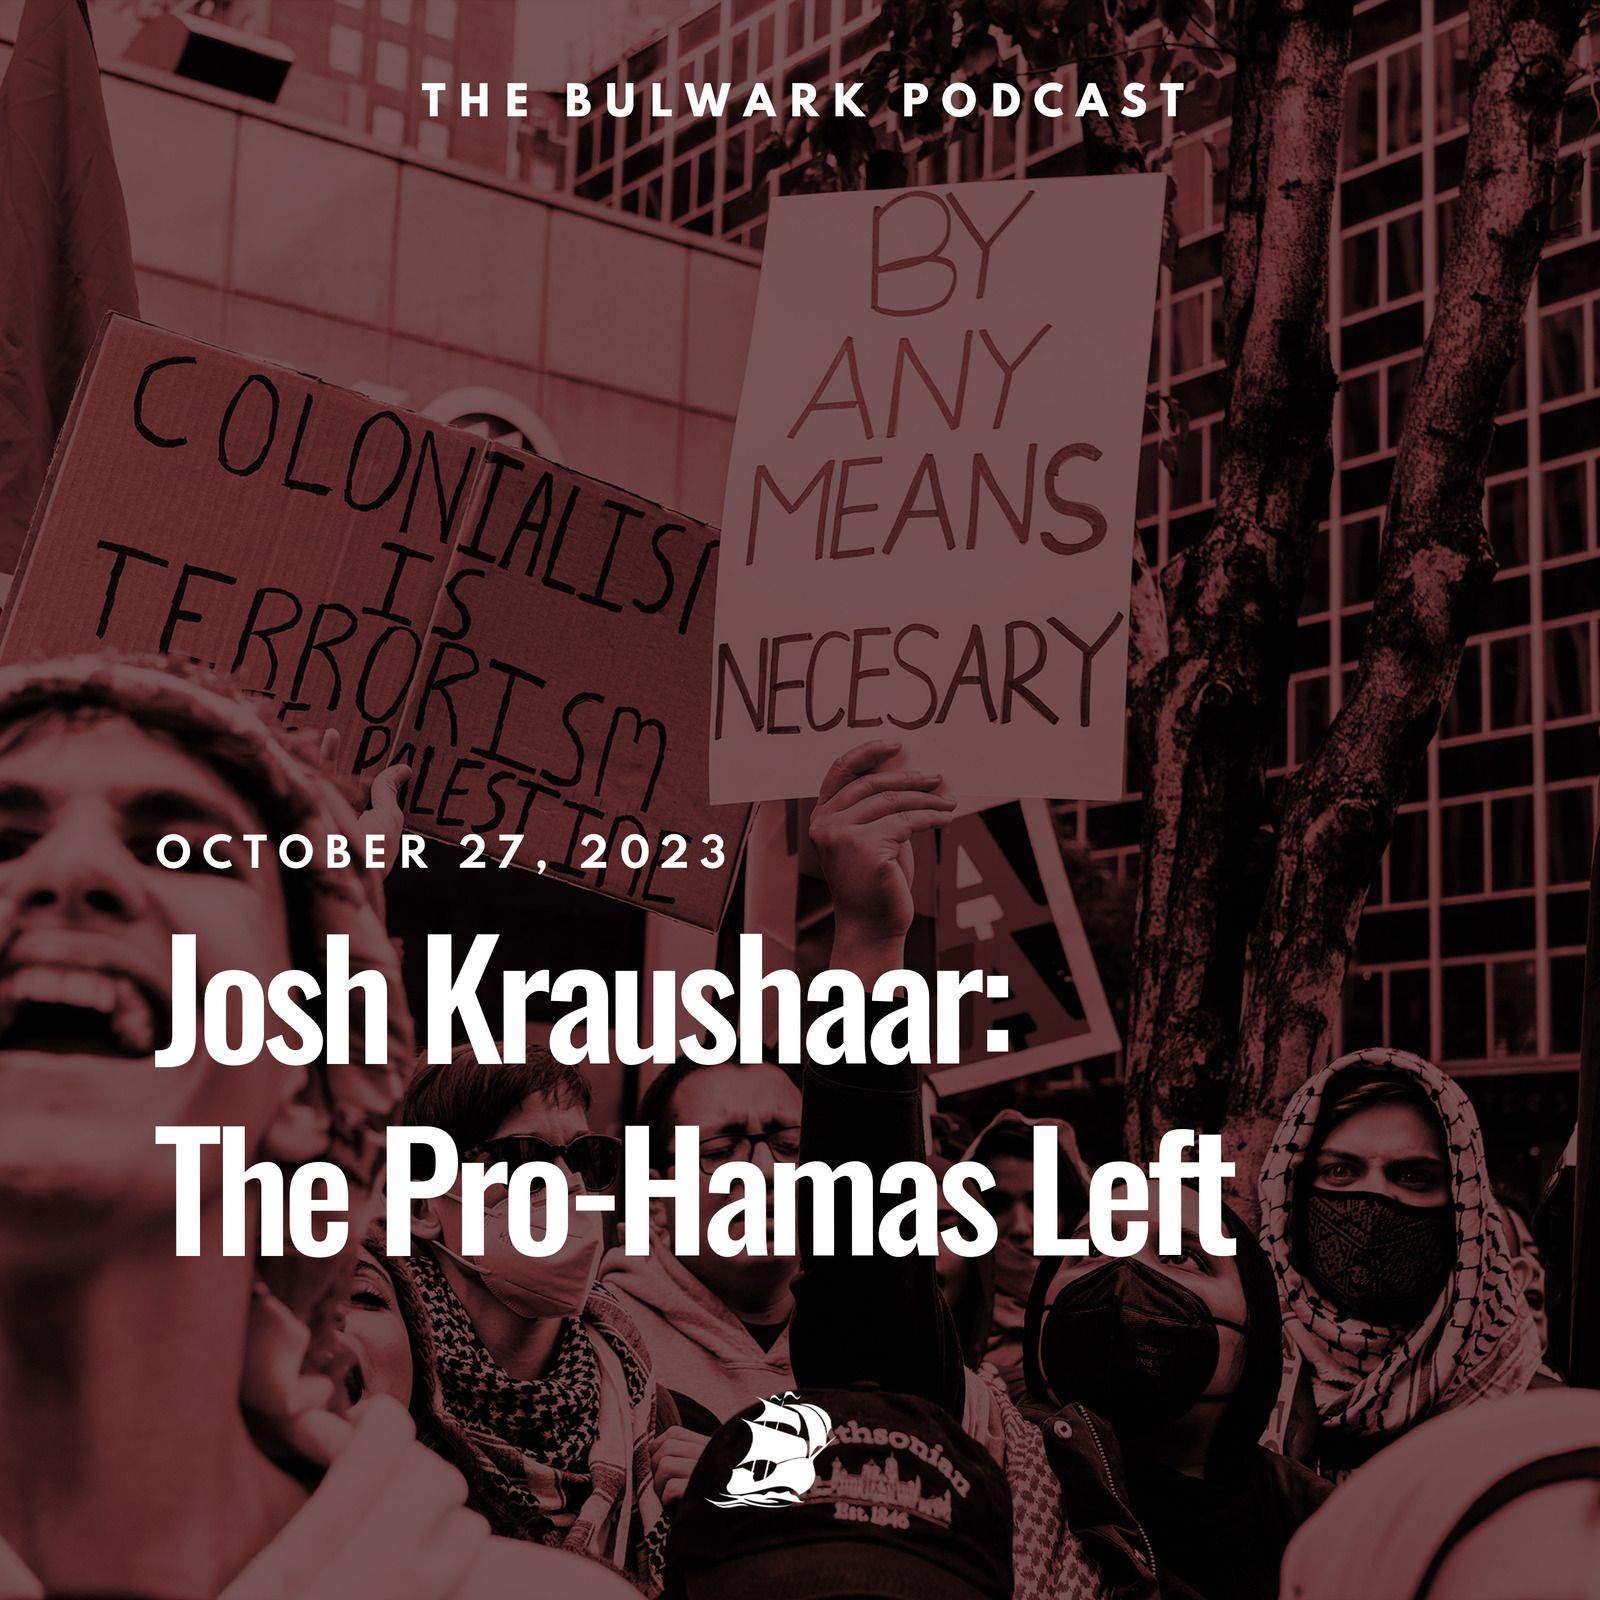 Josh Kraushaar: The Pro-Hamas Left by The Bulwark Podcast